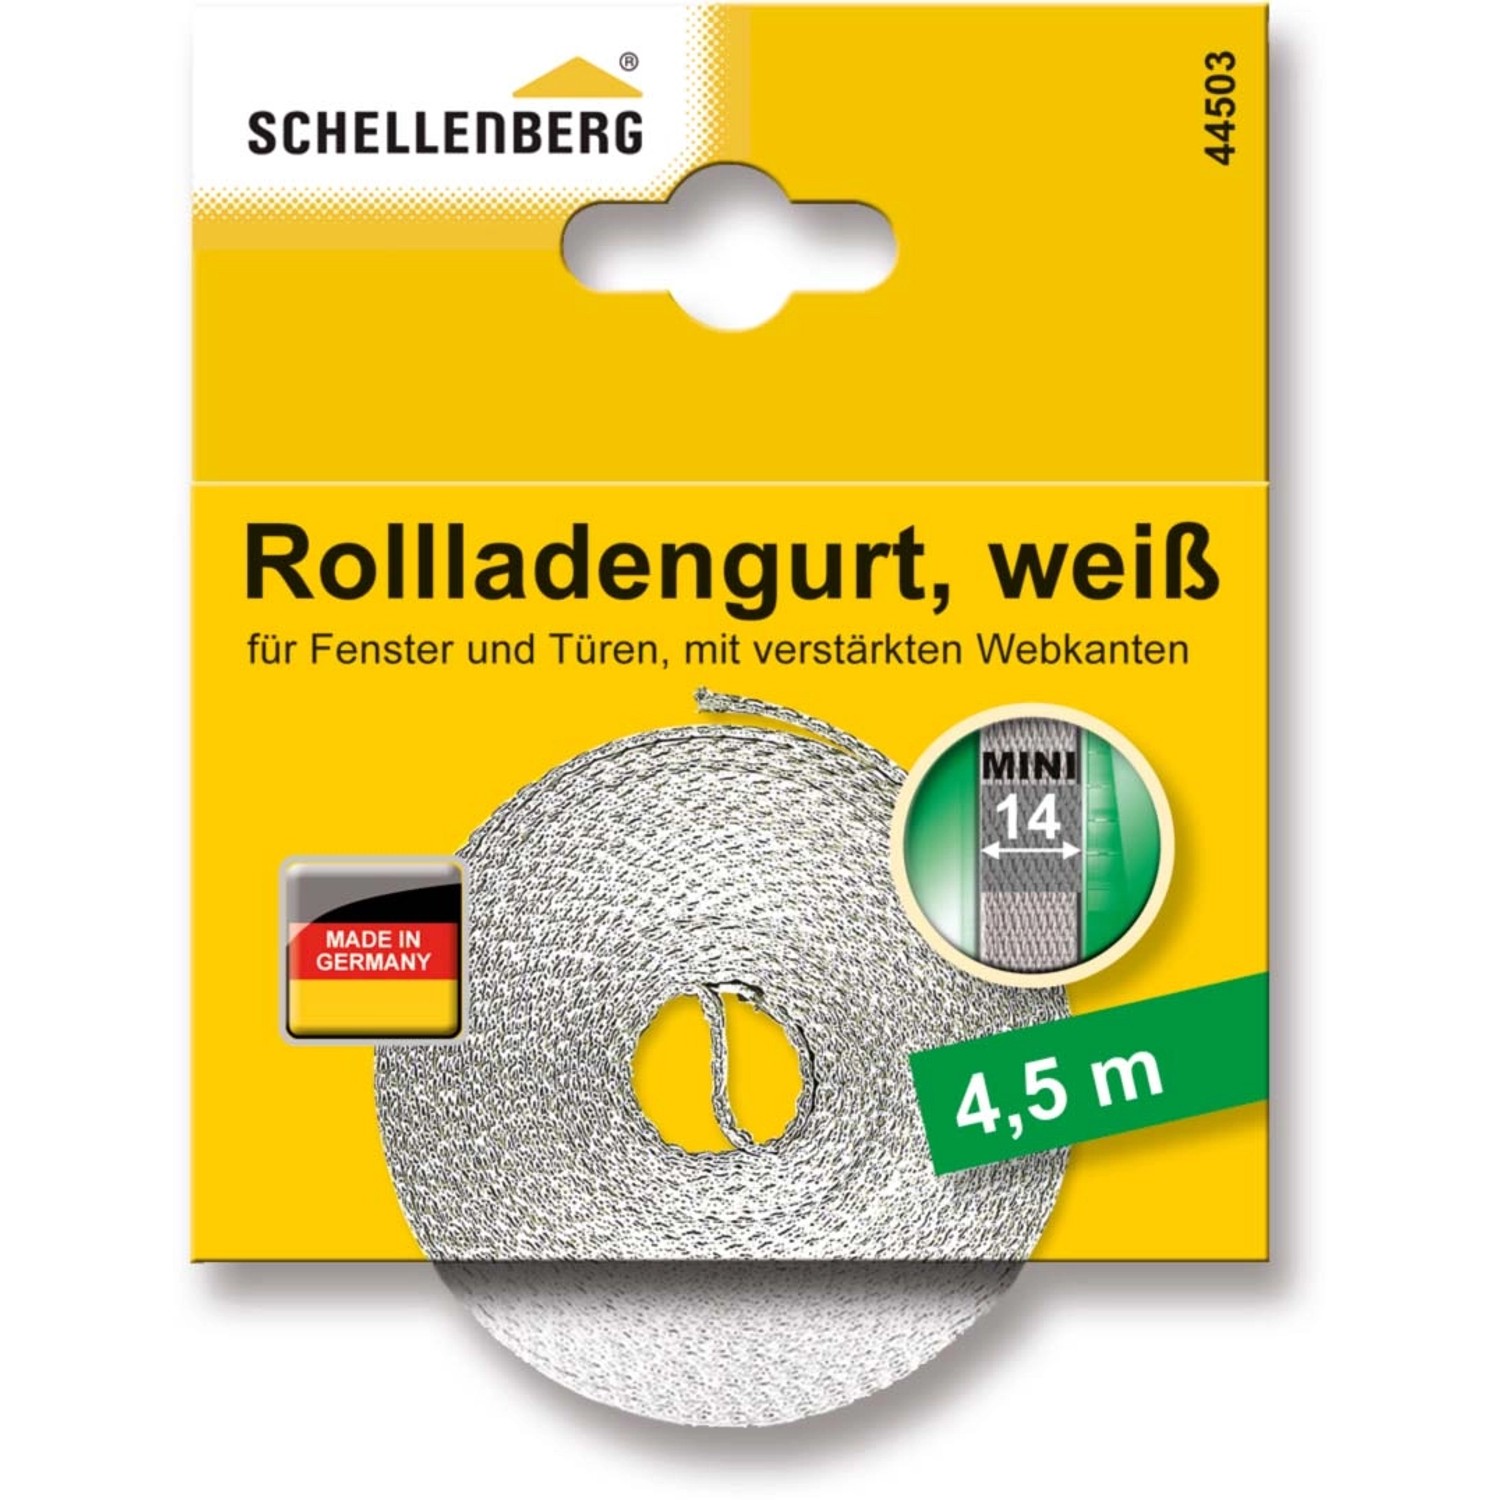 Schellenberg Rollladengurt Mini 14 mm 4,5 m Weiß